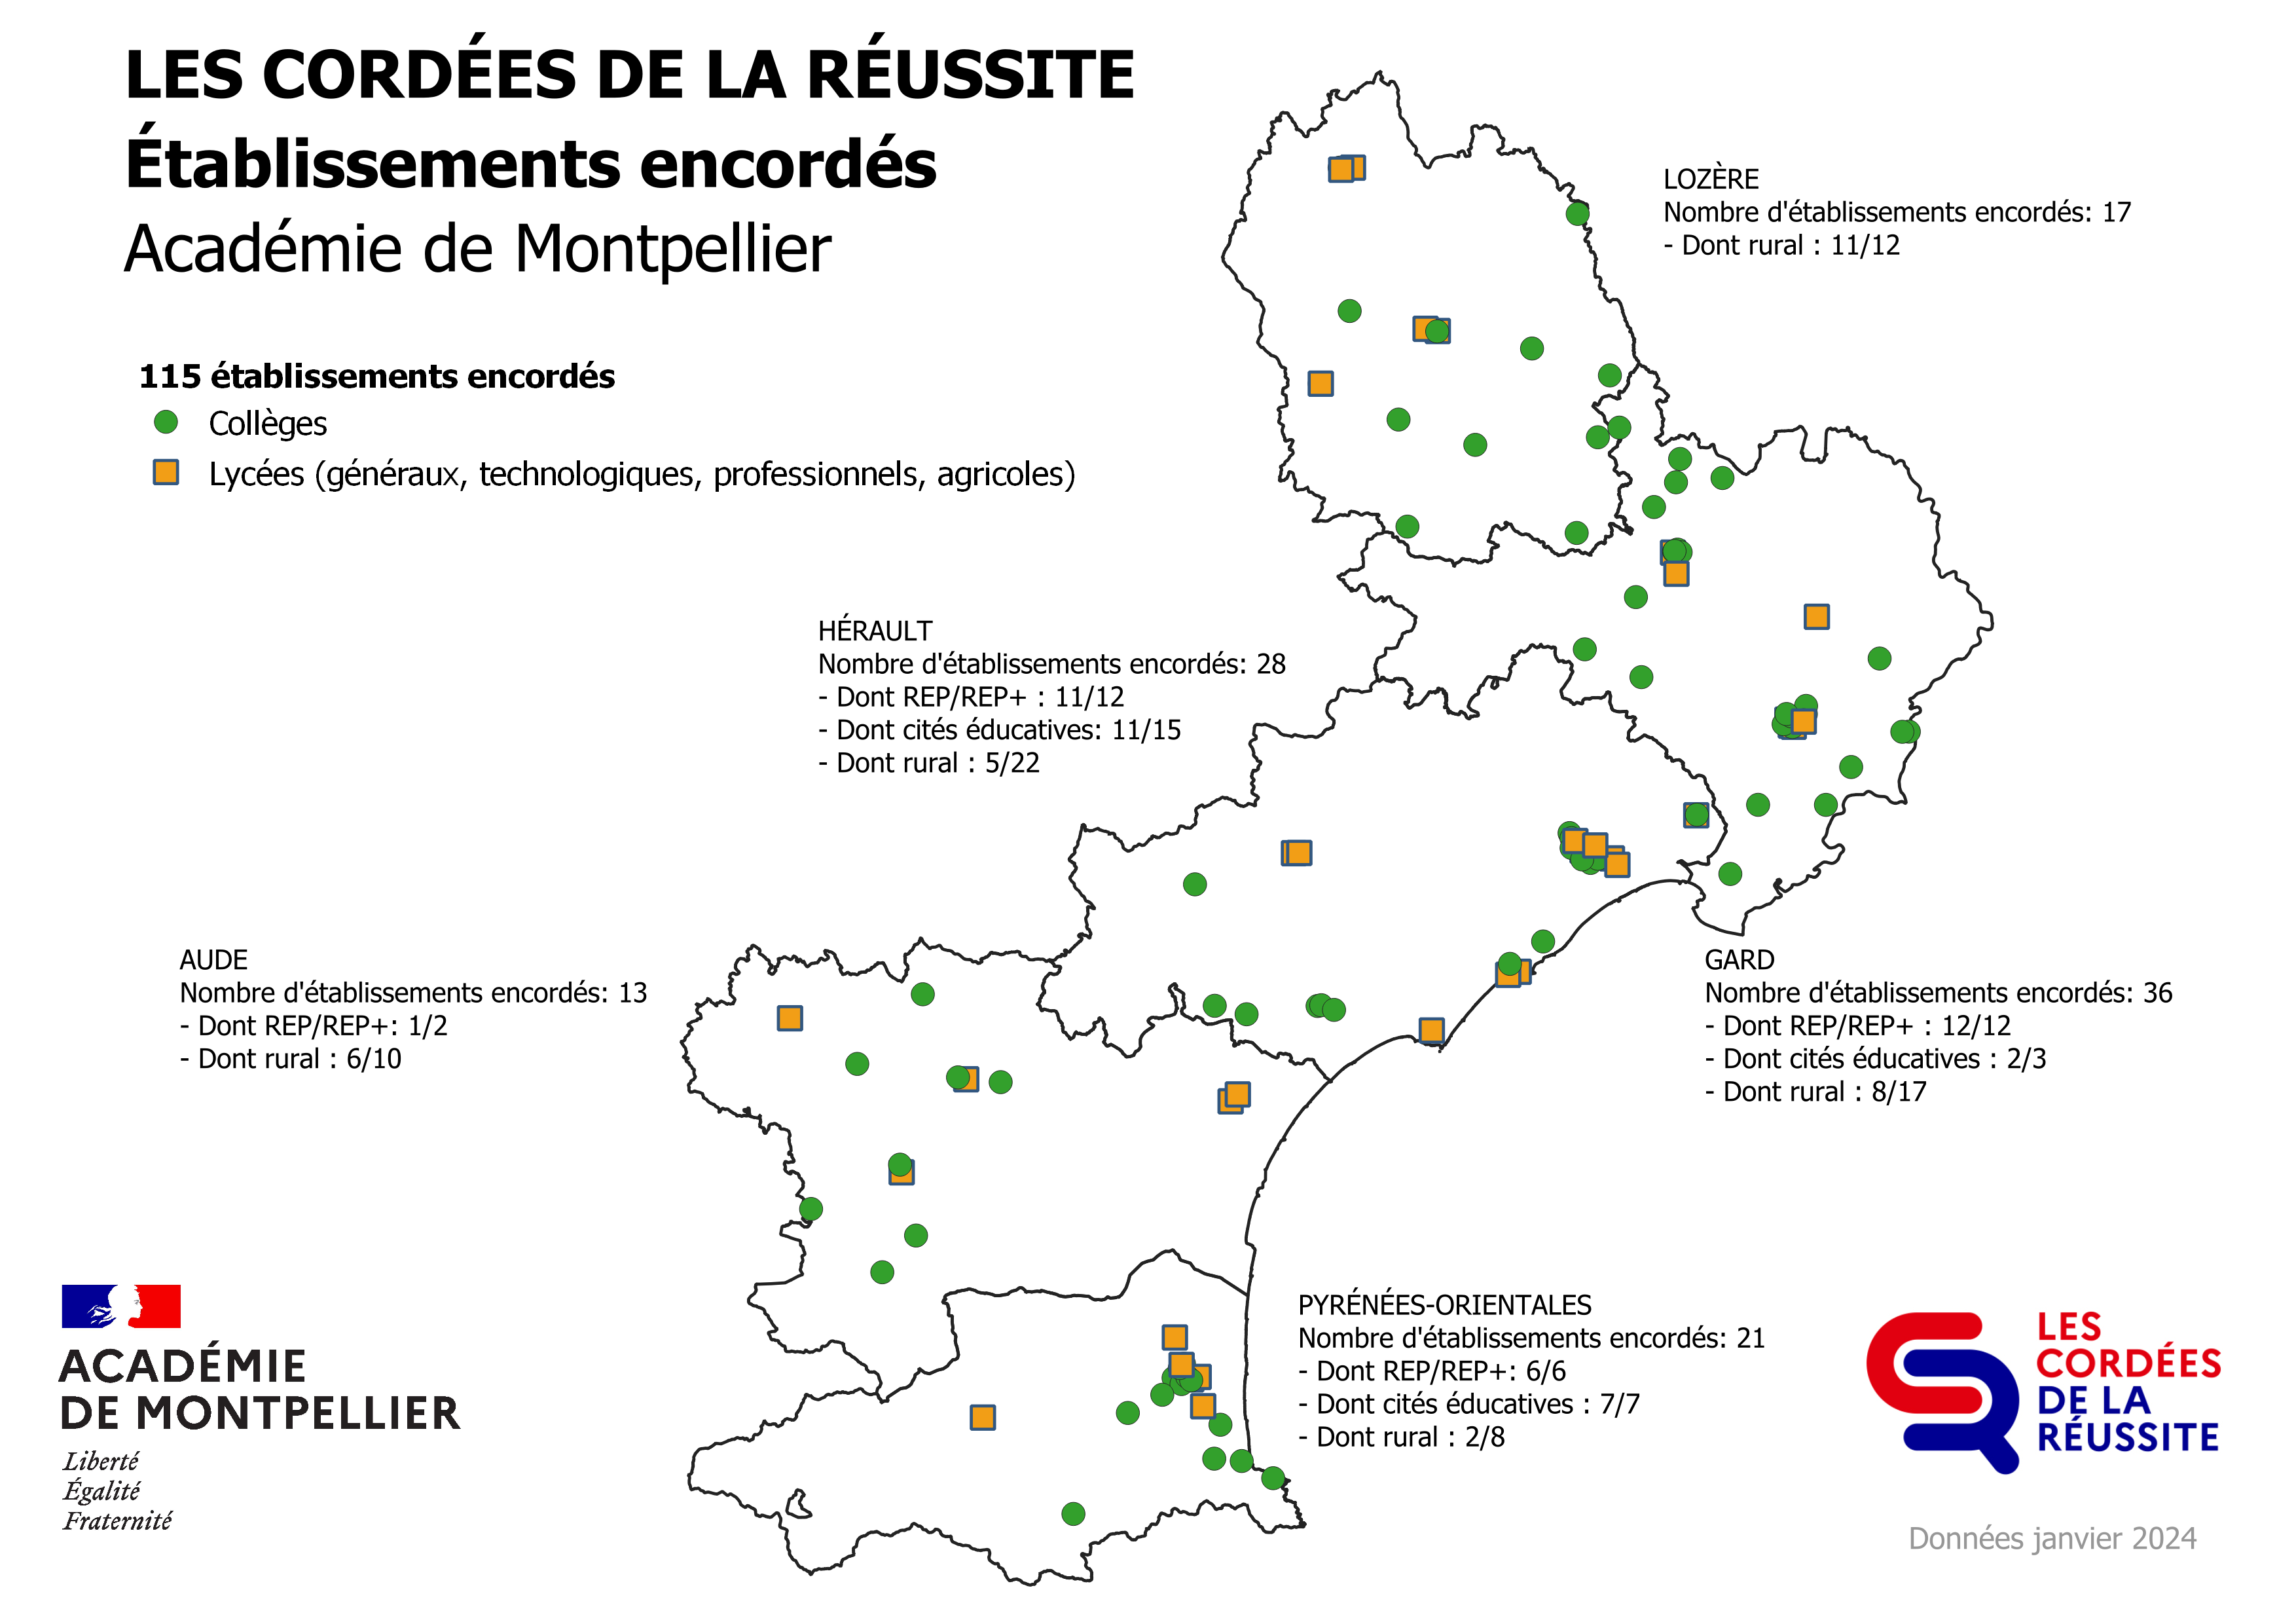 Carte géographique de l'académie de Montpellier situant les établissements secondaires faisant partie des Cordées de la réussite